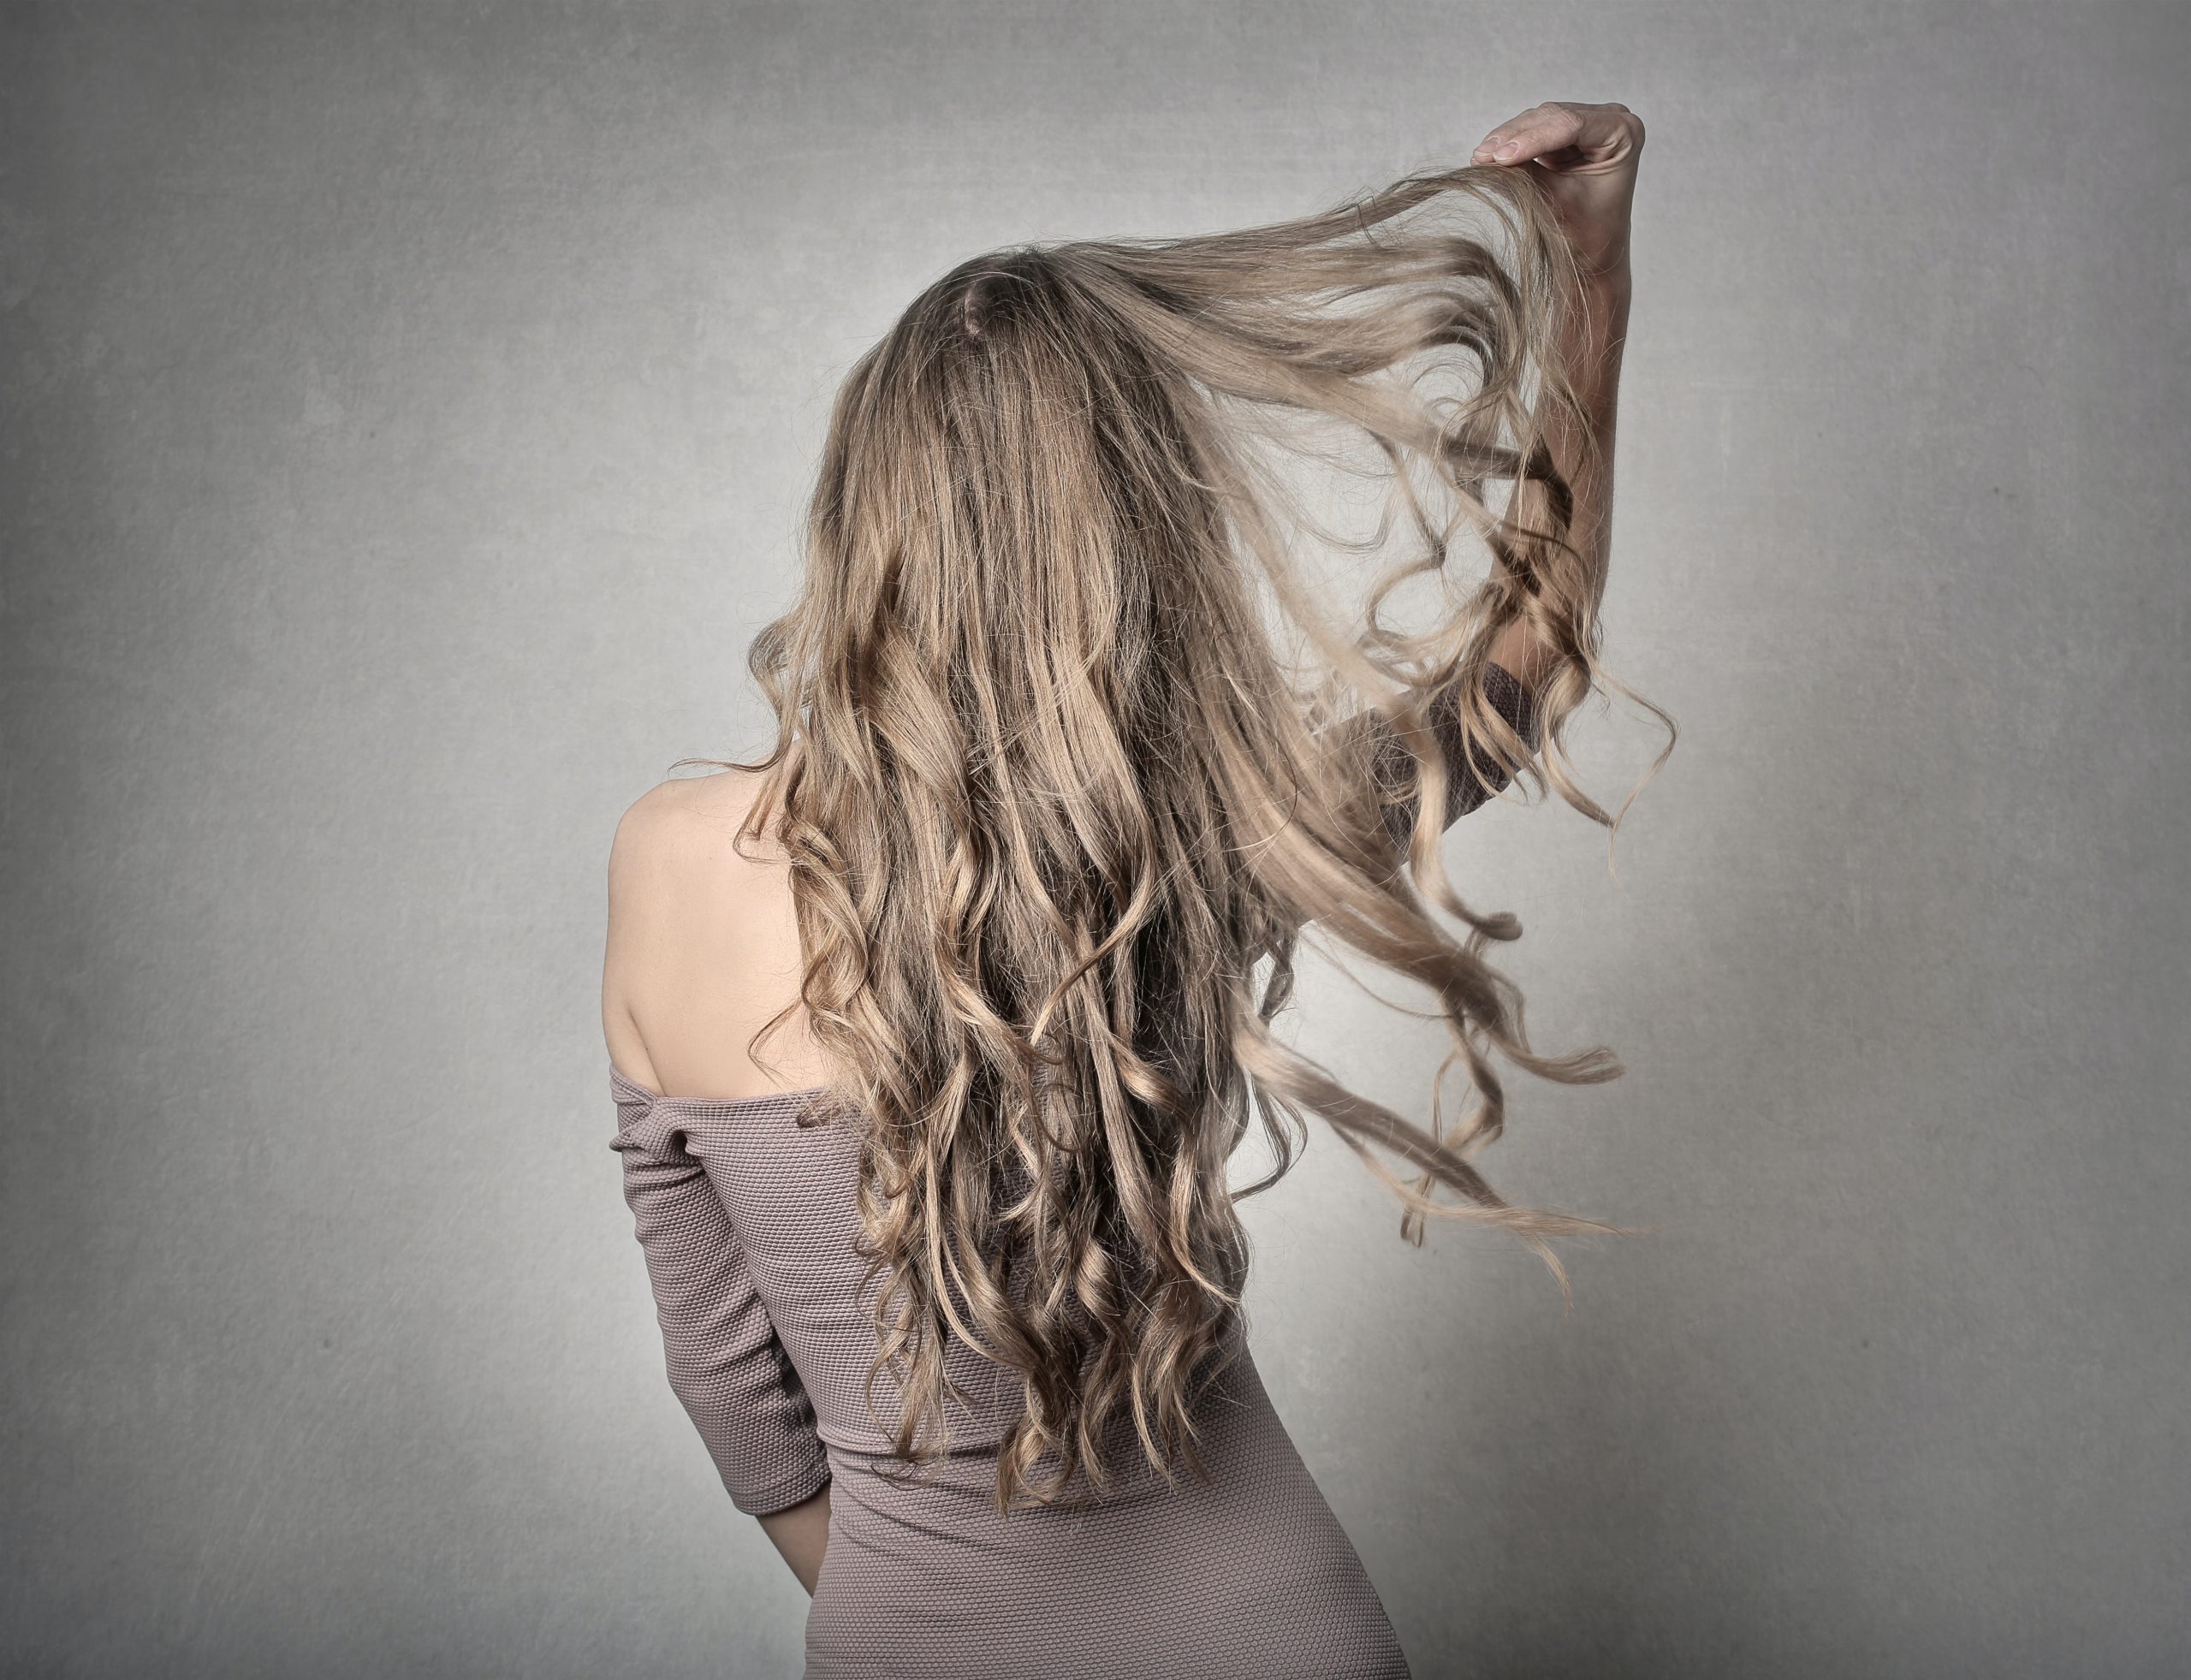 Olaplex (recenze): Drahá řada vlasových výrobků, vyplatí se zkusit?